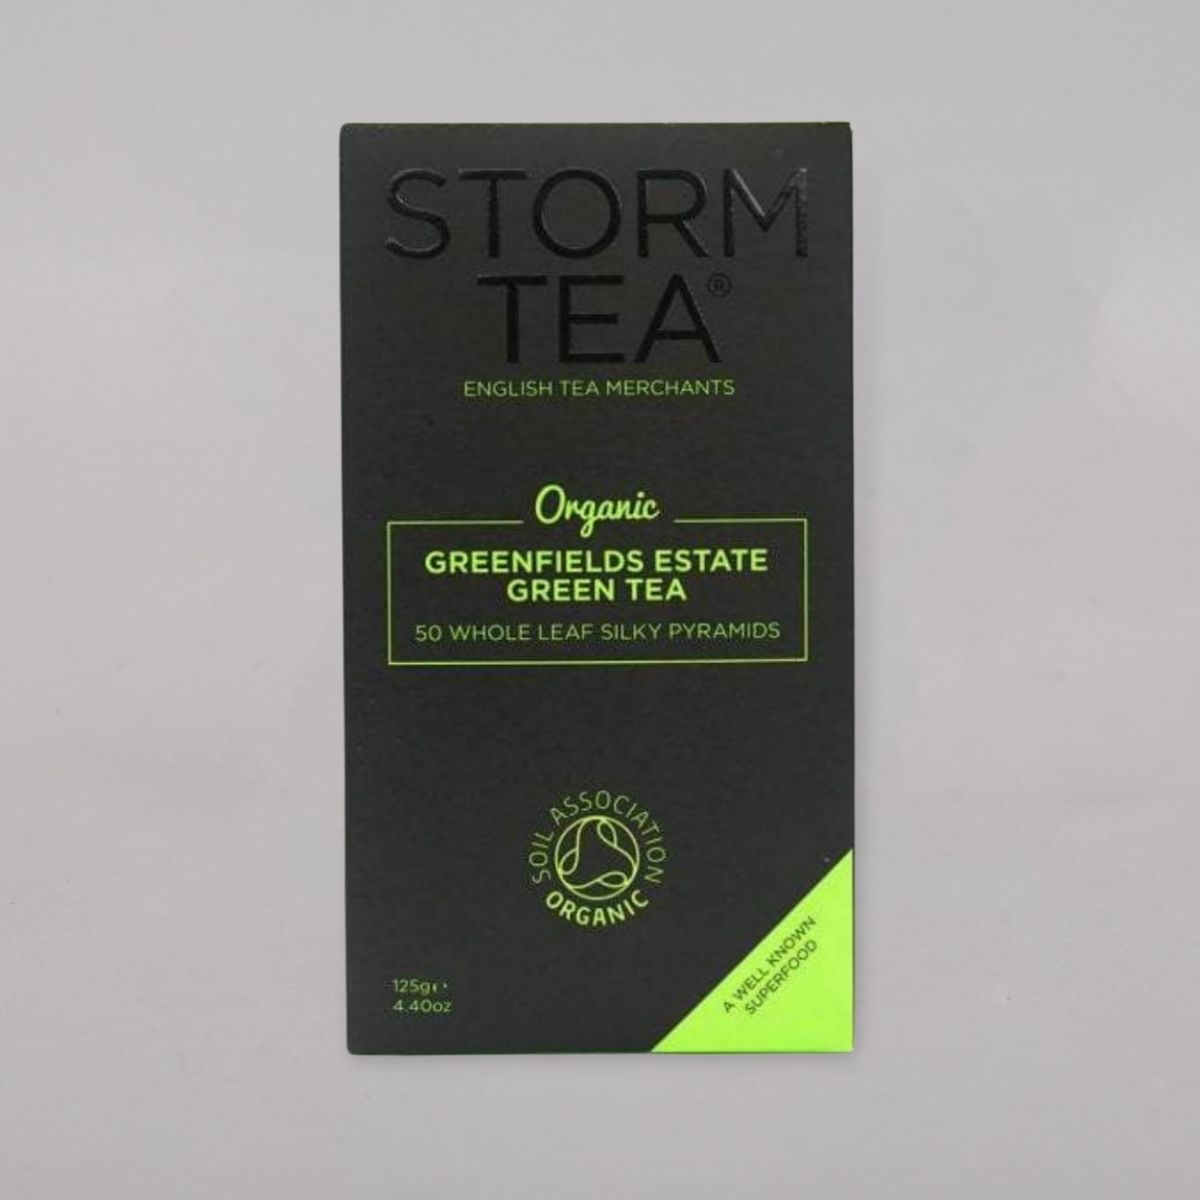 Storm Tea - Greenfields Estate Green Tea (Teabags)